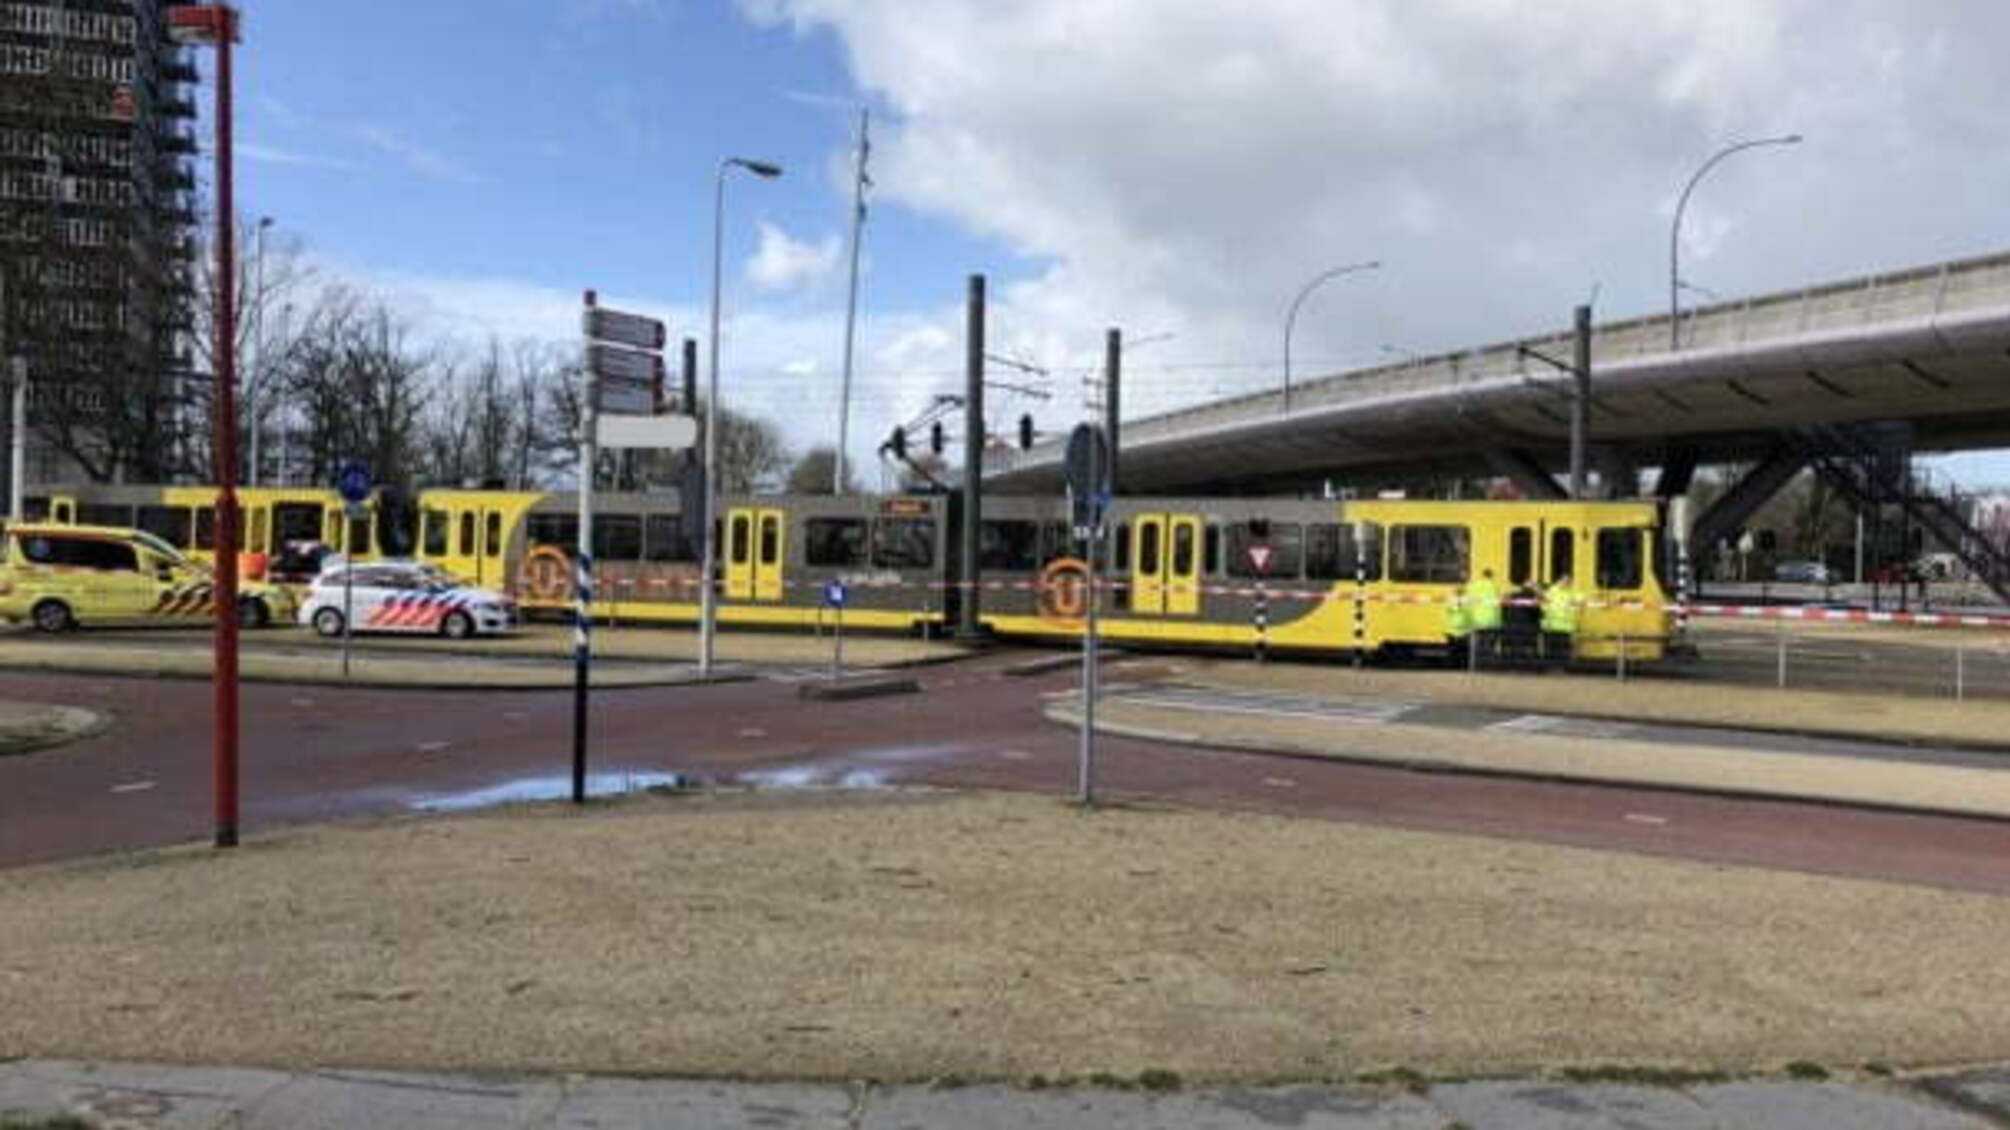 Відкрив вогонь по пасажирах трамваю – подробиці про криваву стрілянину в Нідерландах